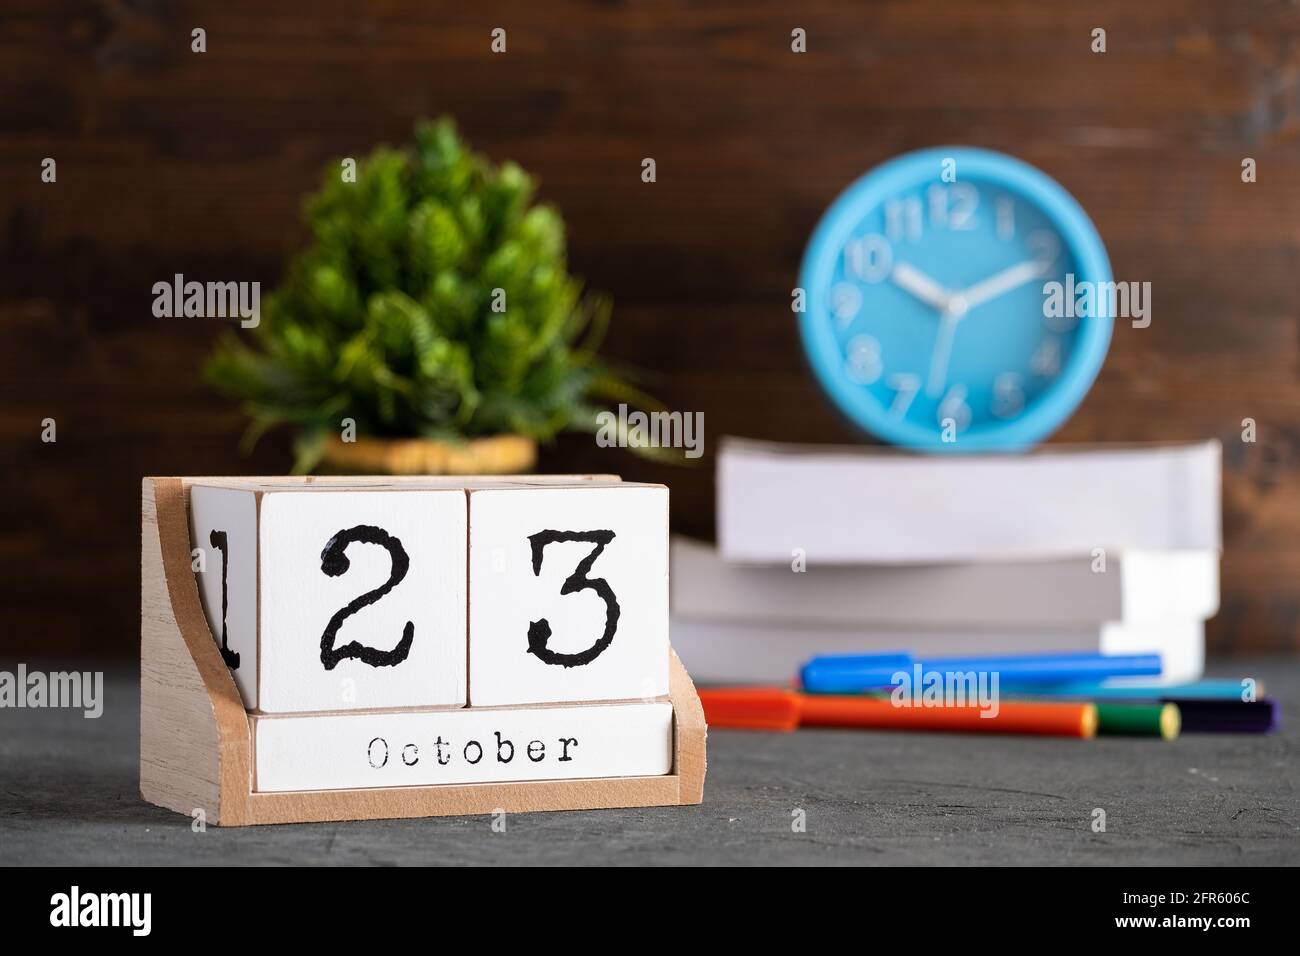 23 octobre. Octobre 23 calendrier cube en bois avec objets flous sur fond. Banque D'Images